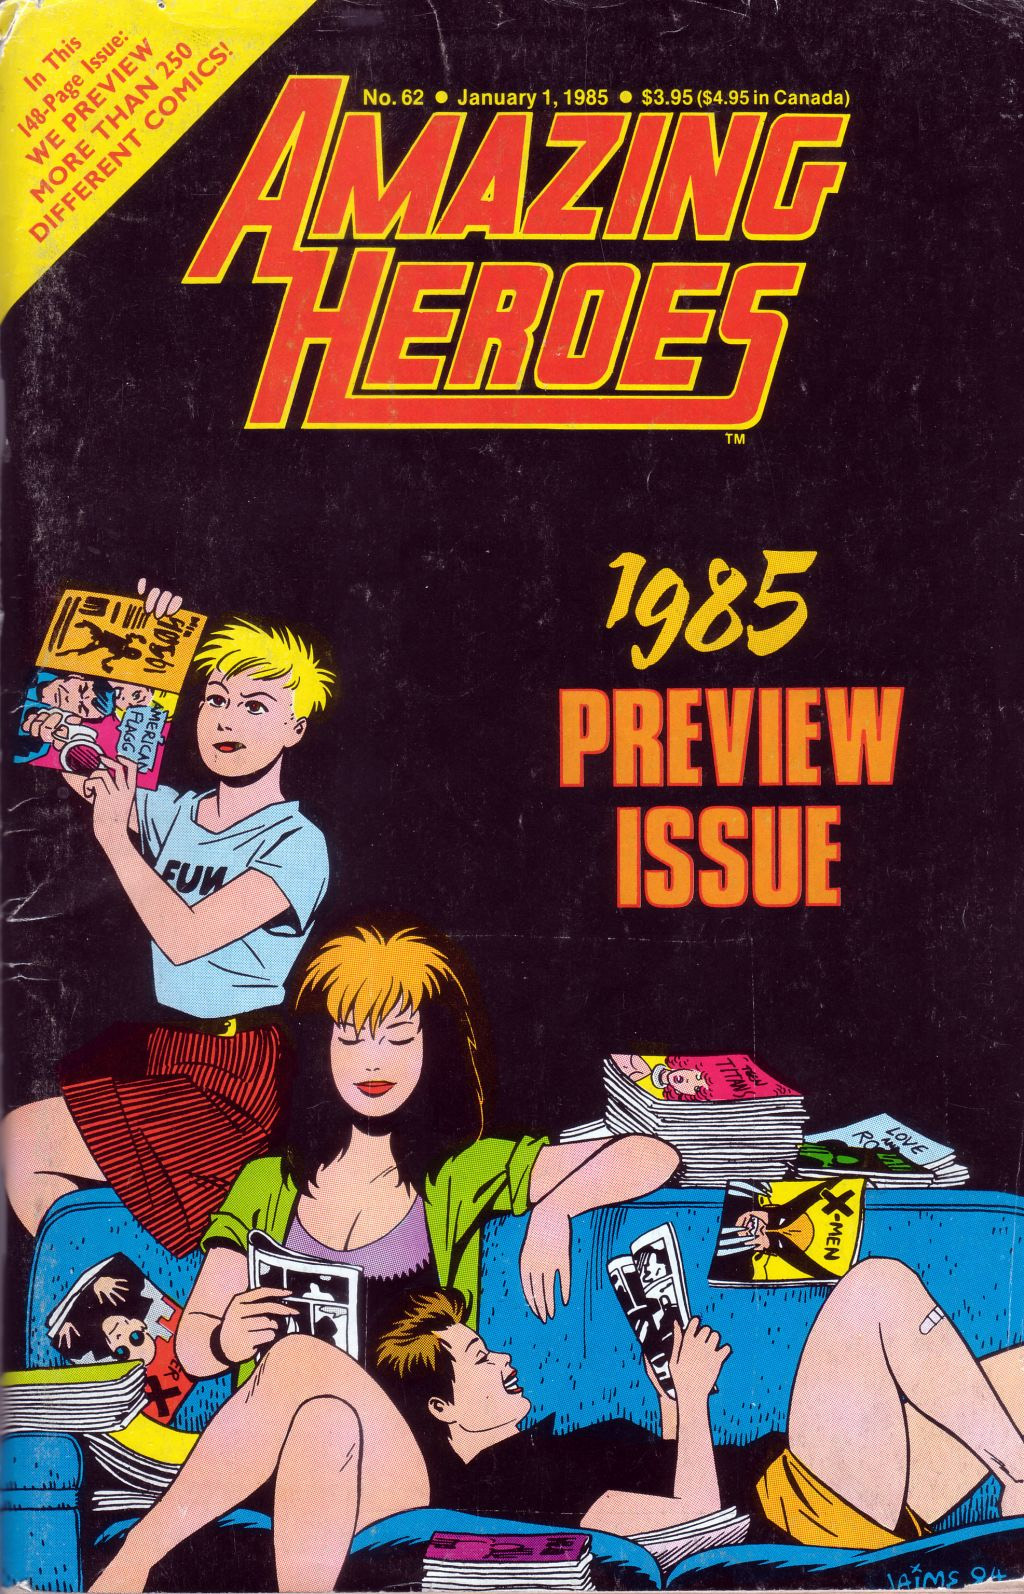 Amazing Heroes #62, cover, art by Jaime Hernandez